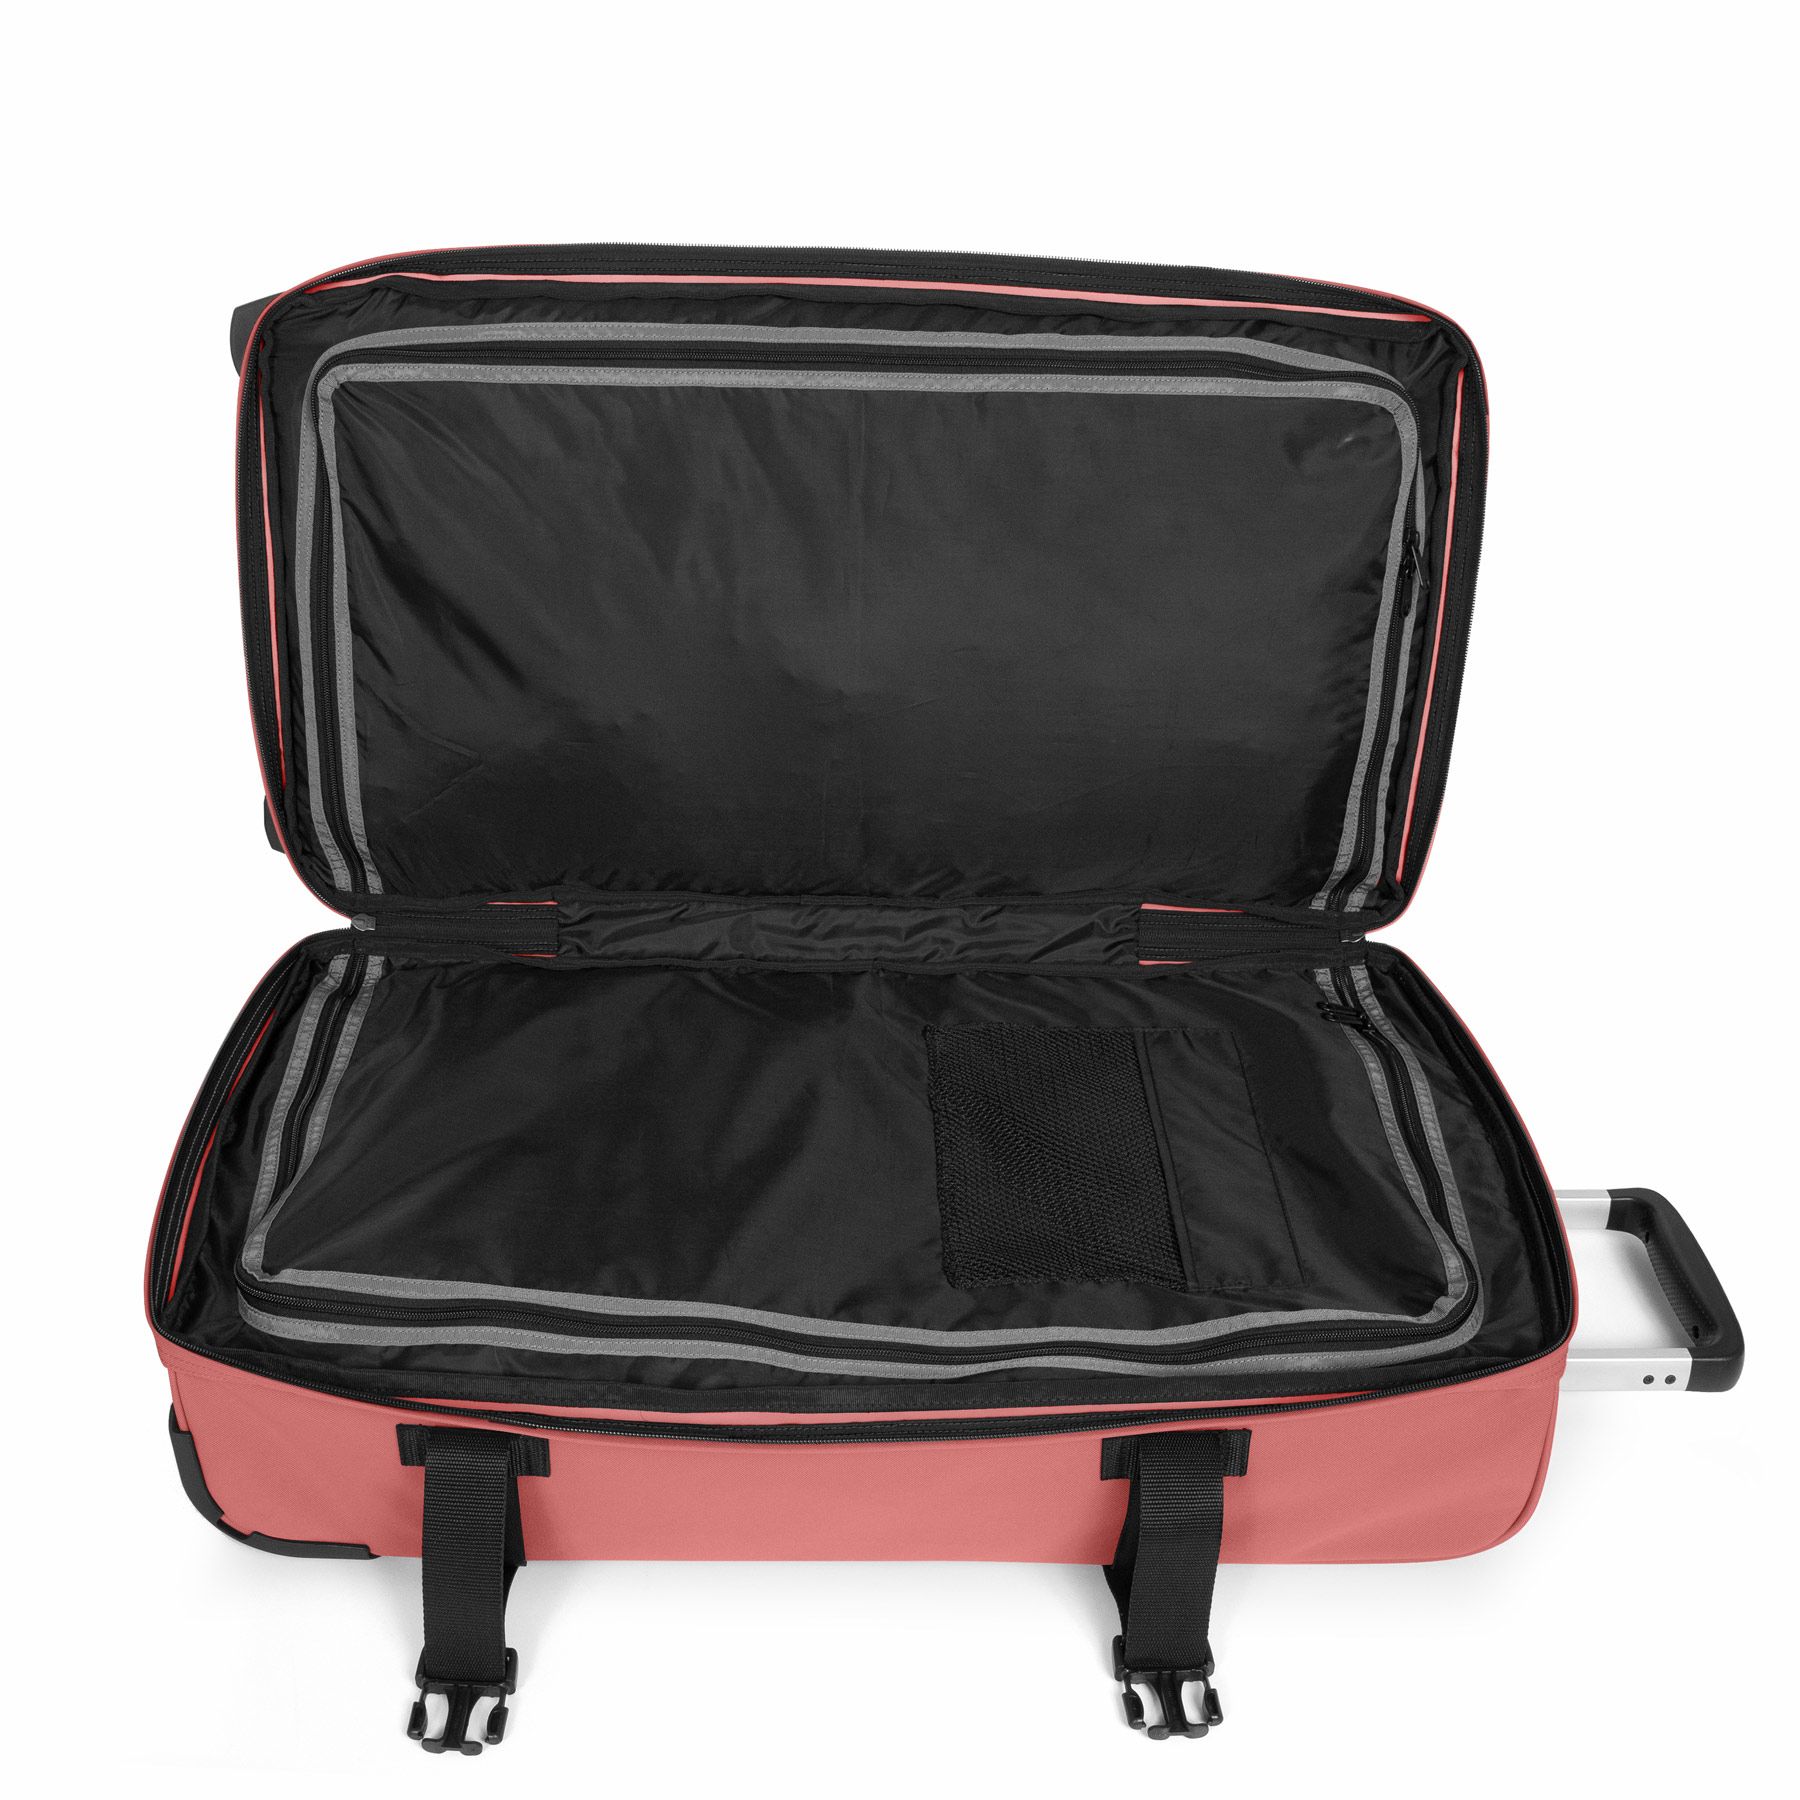 Eastpak Transit'R L 121 Litres Two Wheel Soft Suitcase